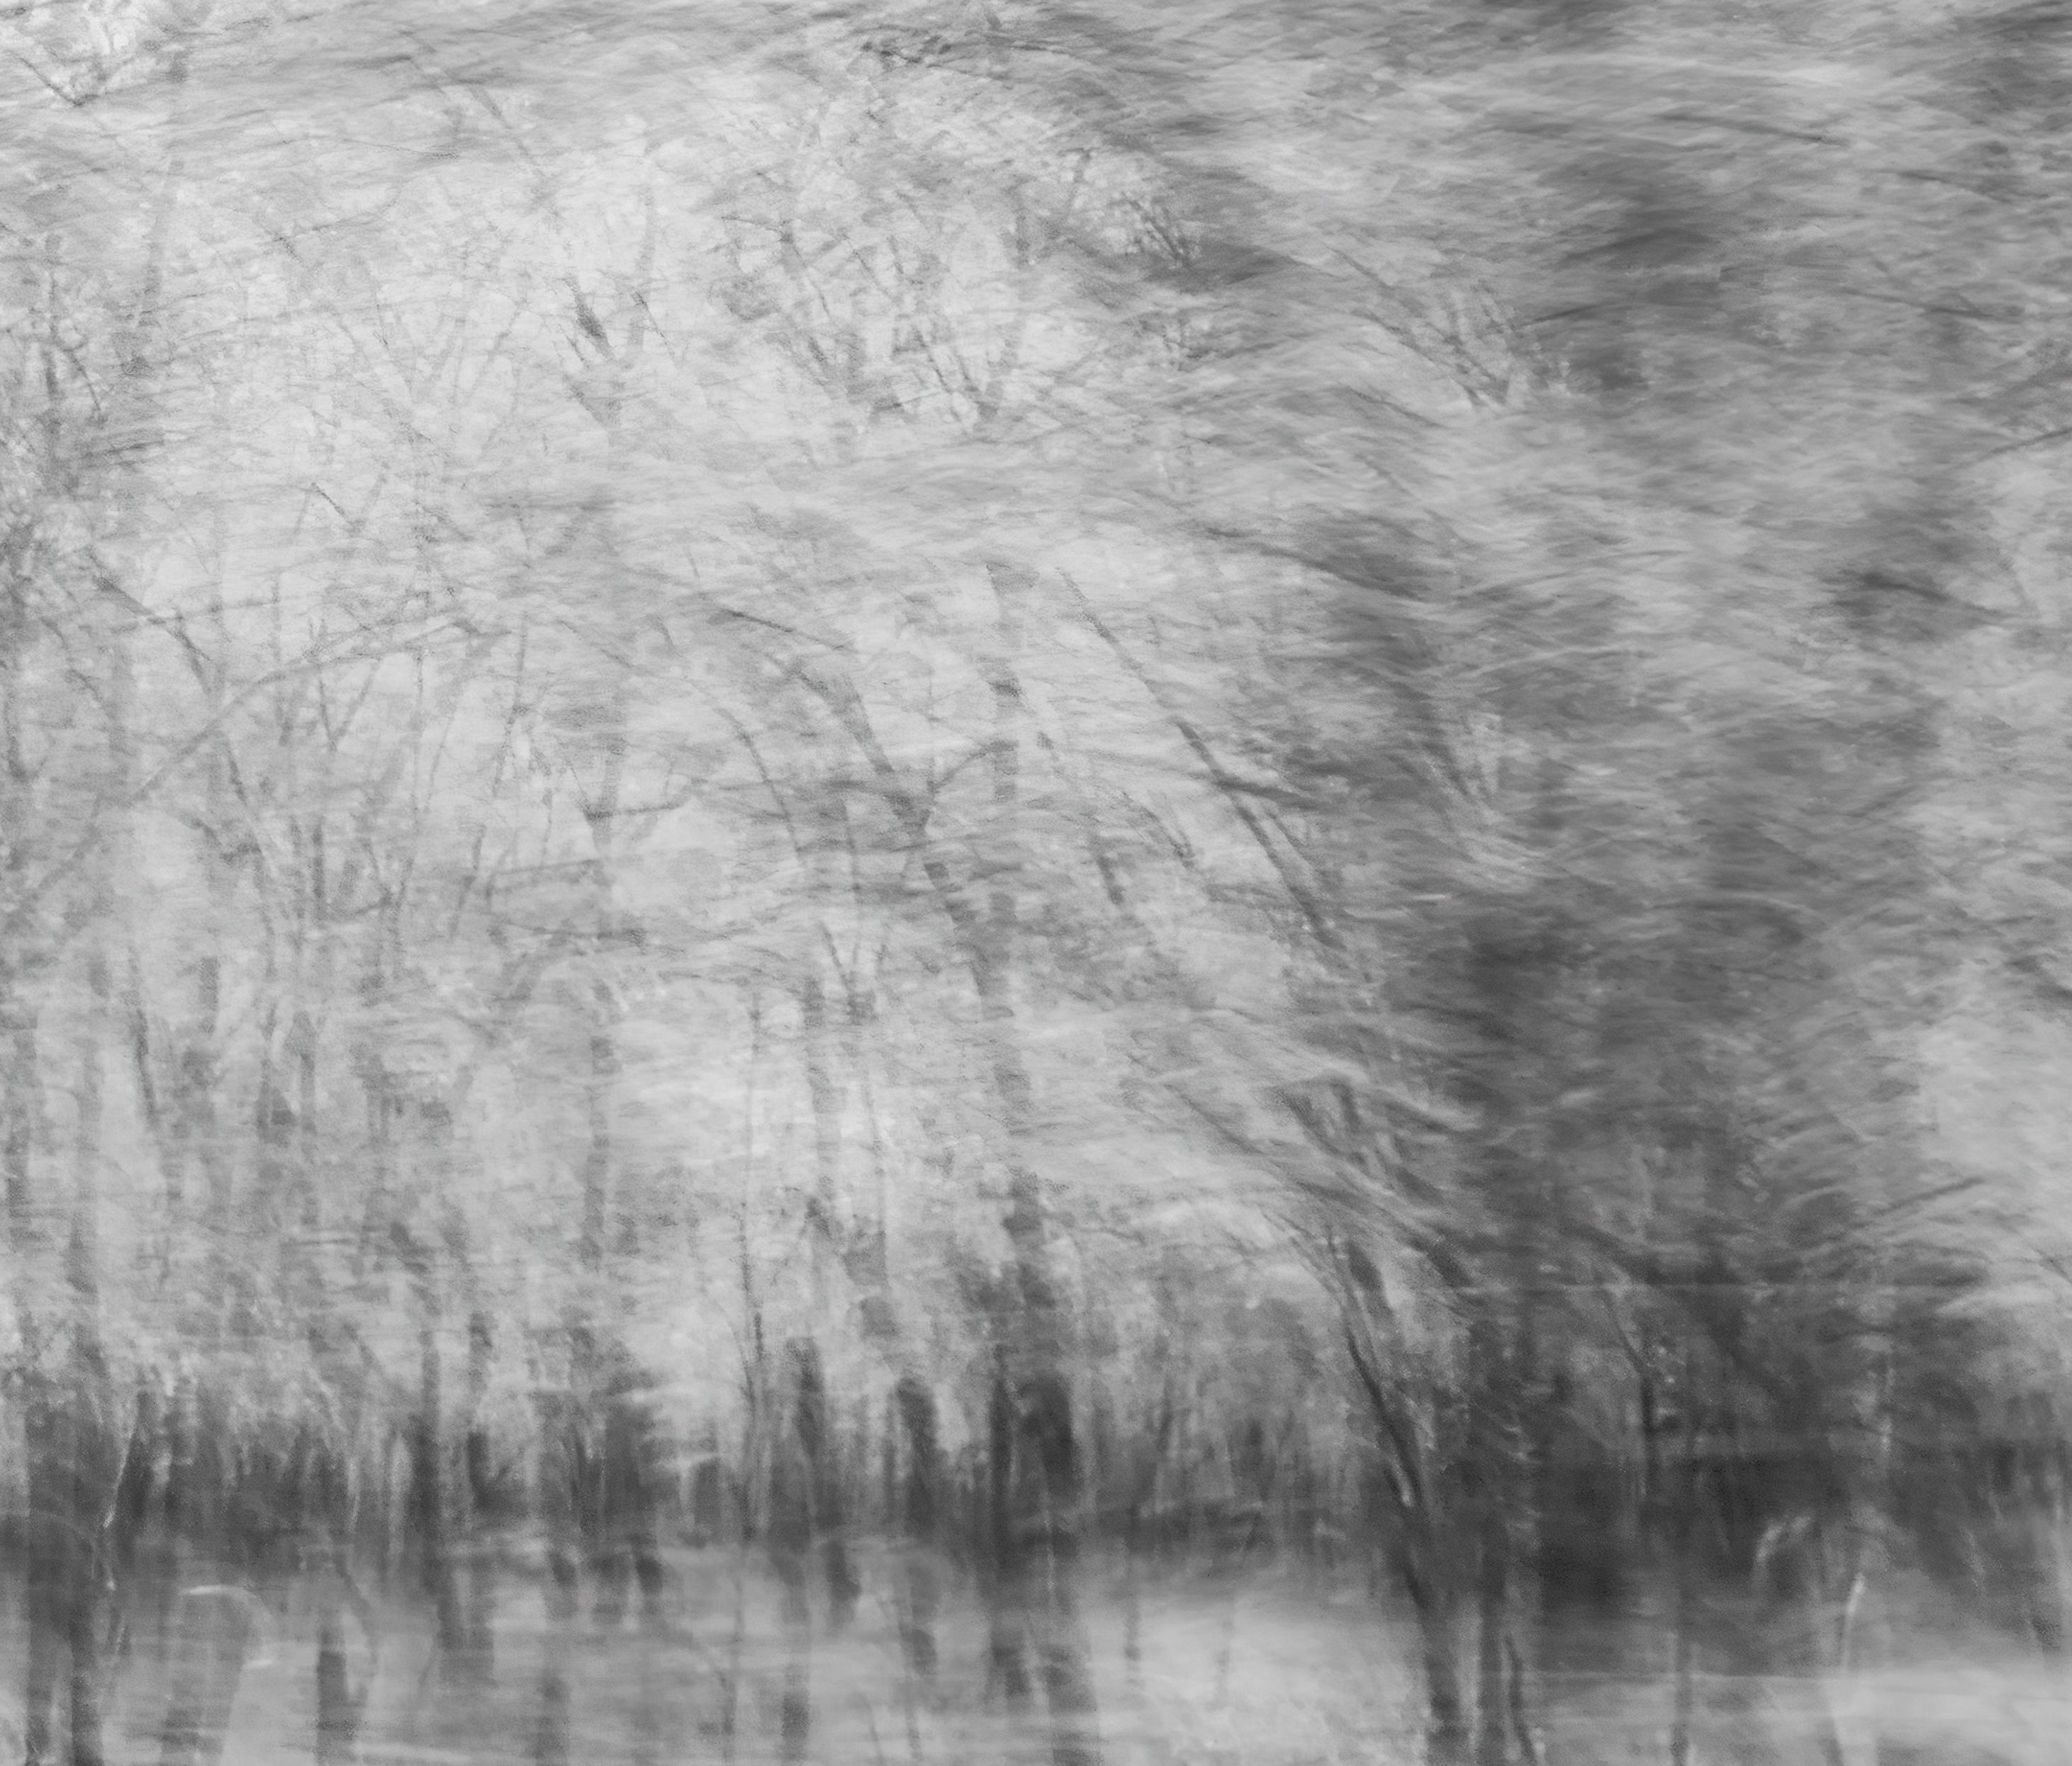  Landschaftsfotografie Natur Groß Abstrakt Bäume Wildnis Indien Schwarz Weiß (Grau), Abstract Photograph, von Aditya Dicky Singh